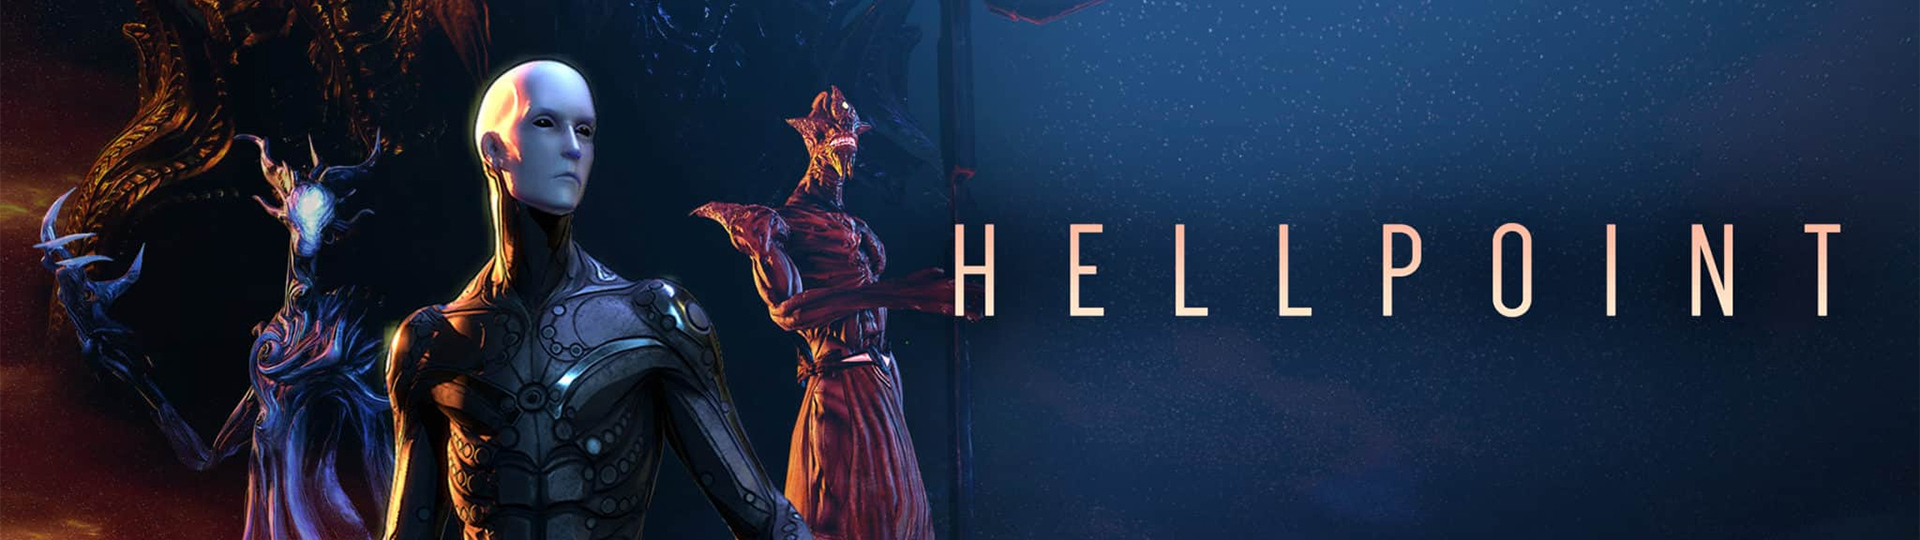 Hellpoint vyjde pro PS5 v roce 2021 | Novinky